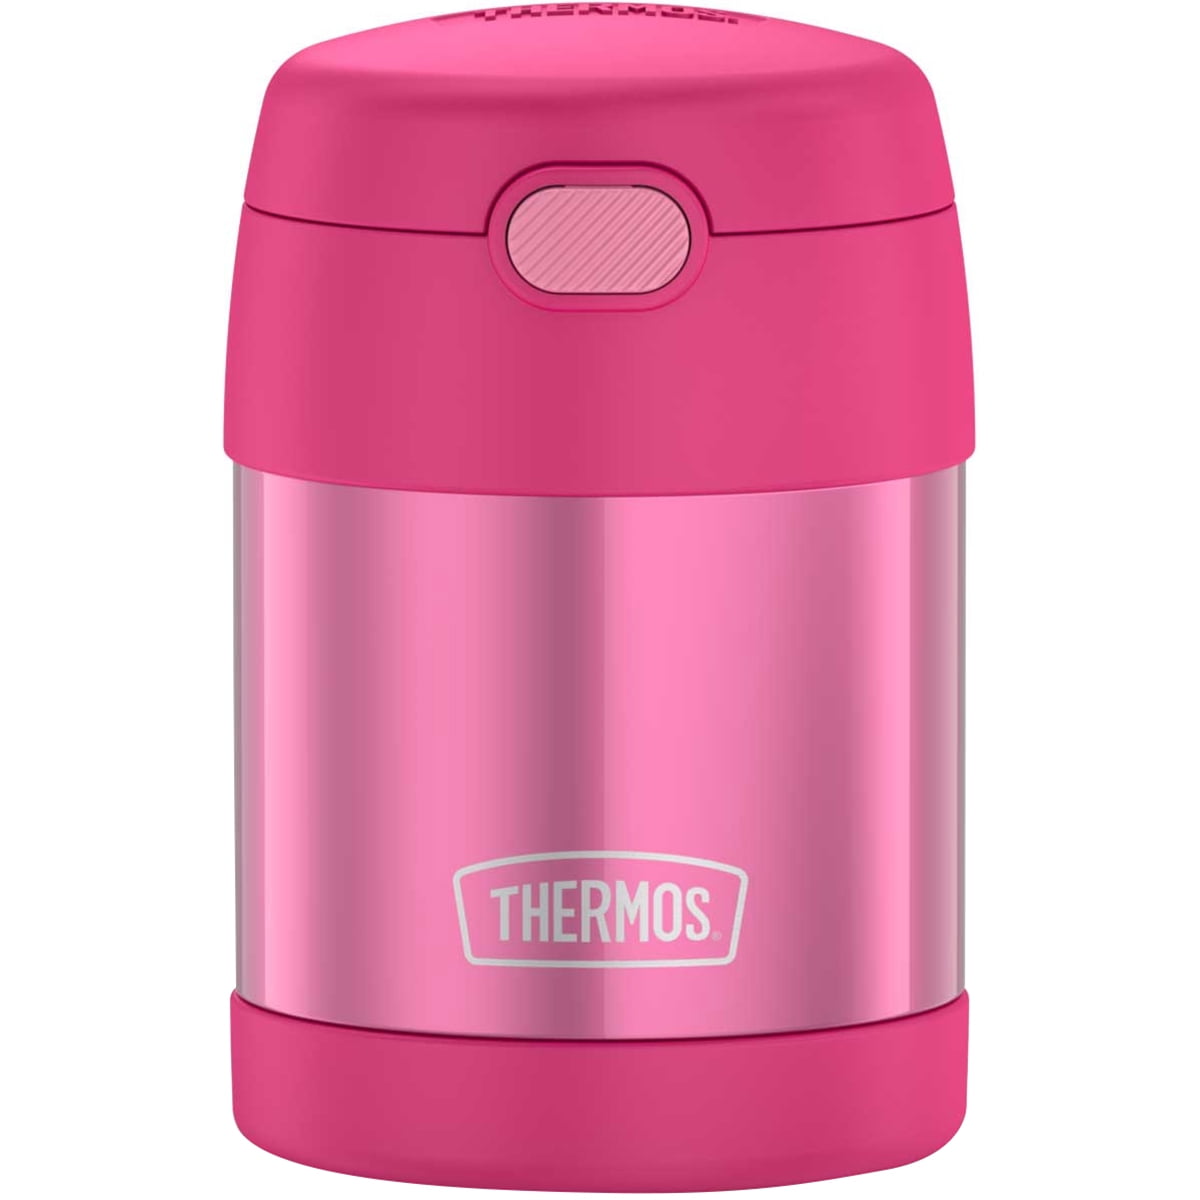 Thermos Foogo Stainless Steel Food Jar, 10 oz, Pink